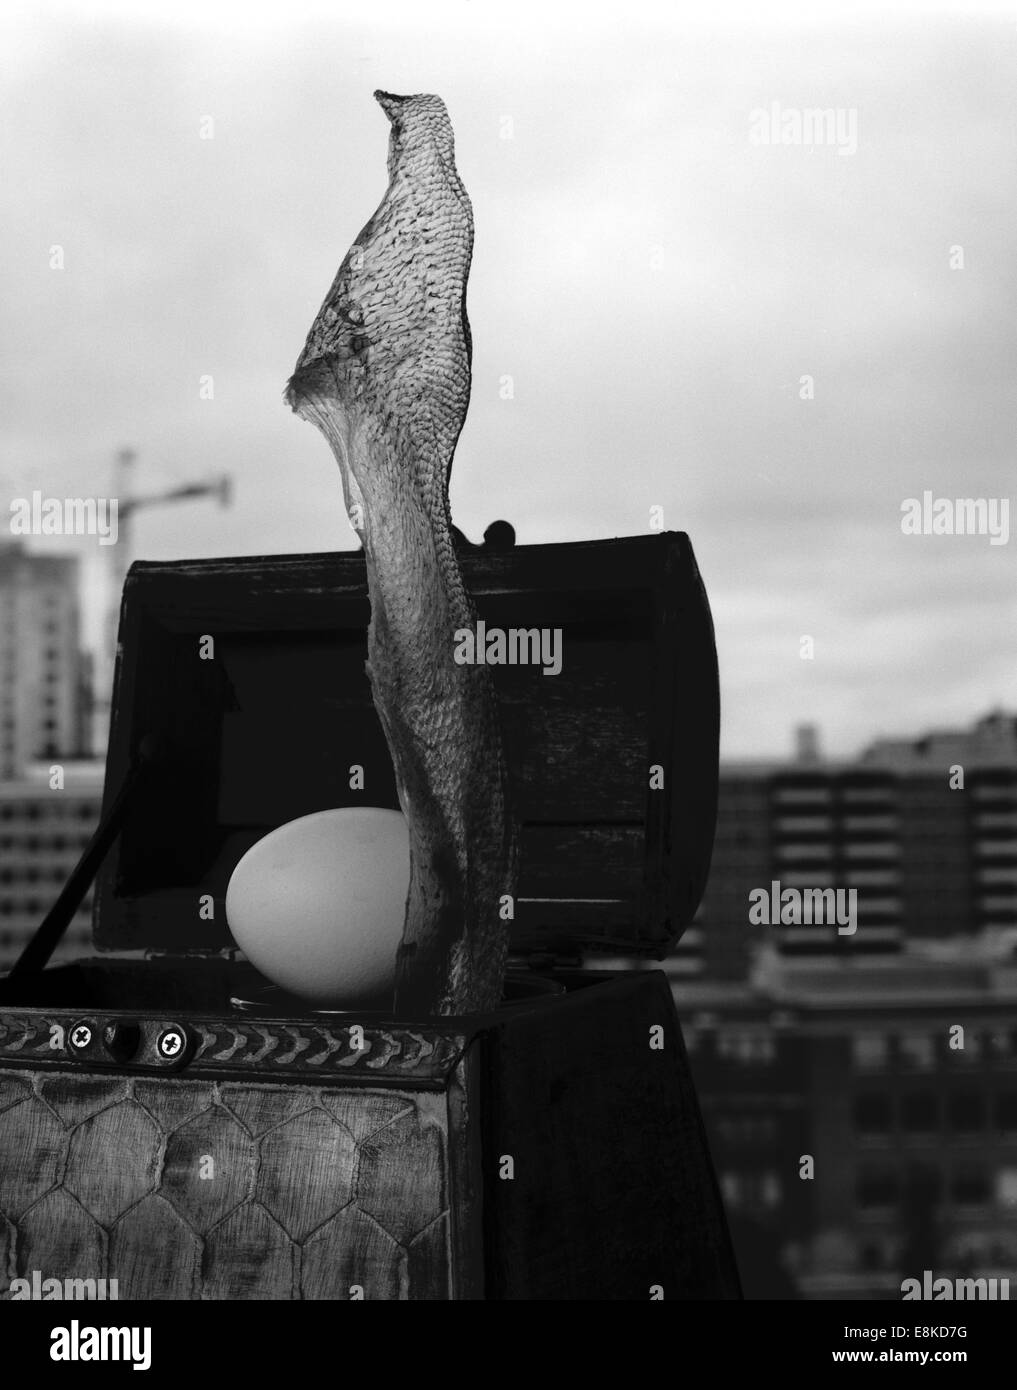 Une peau de poisson sec relevée au-dessus de la ville d'une boîte mystère avec un oeuf Banque D'Images